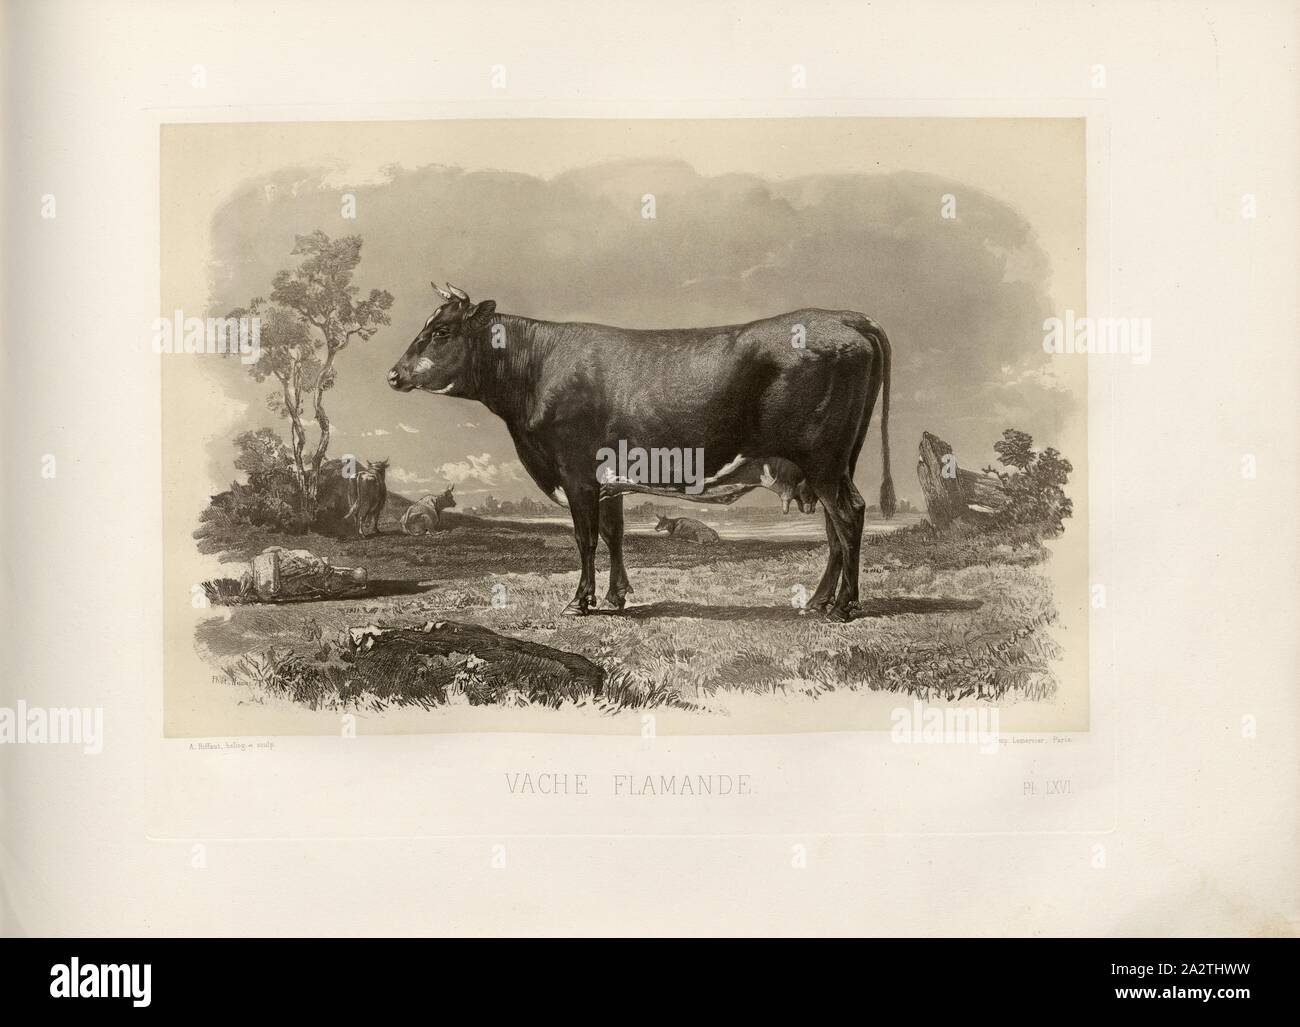 Flemish cow, French cattle breed, cow, signed: Phot., Nadar, Emile Van Marcke; A. Riffaut heliog., et sculp, Pl. LXVI, p. 151, Tournachon, Adrien Alban (Phot.); Marcke, Emile van; Riffaut, A. (heliog. et sc.), Emile Baudement: Les races bovines au concours universel agricole de Paris en 1856: études zootechniques. Bd. 2. Paris: Imprimerie Impériale, MDCCCLXI [1861 Stock Photo